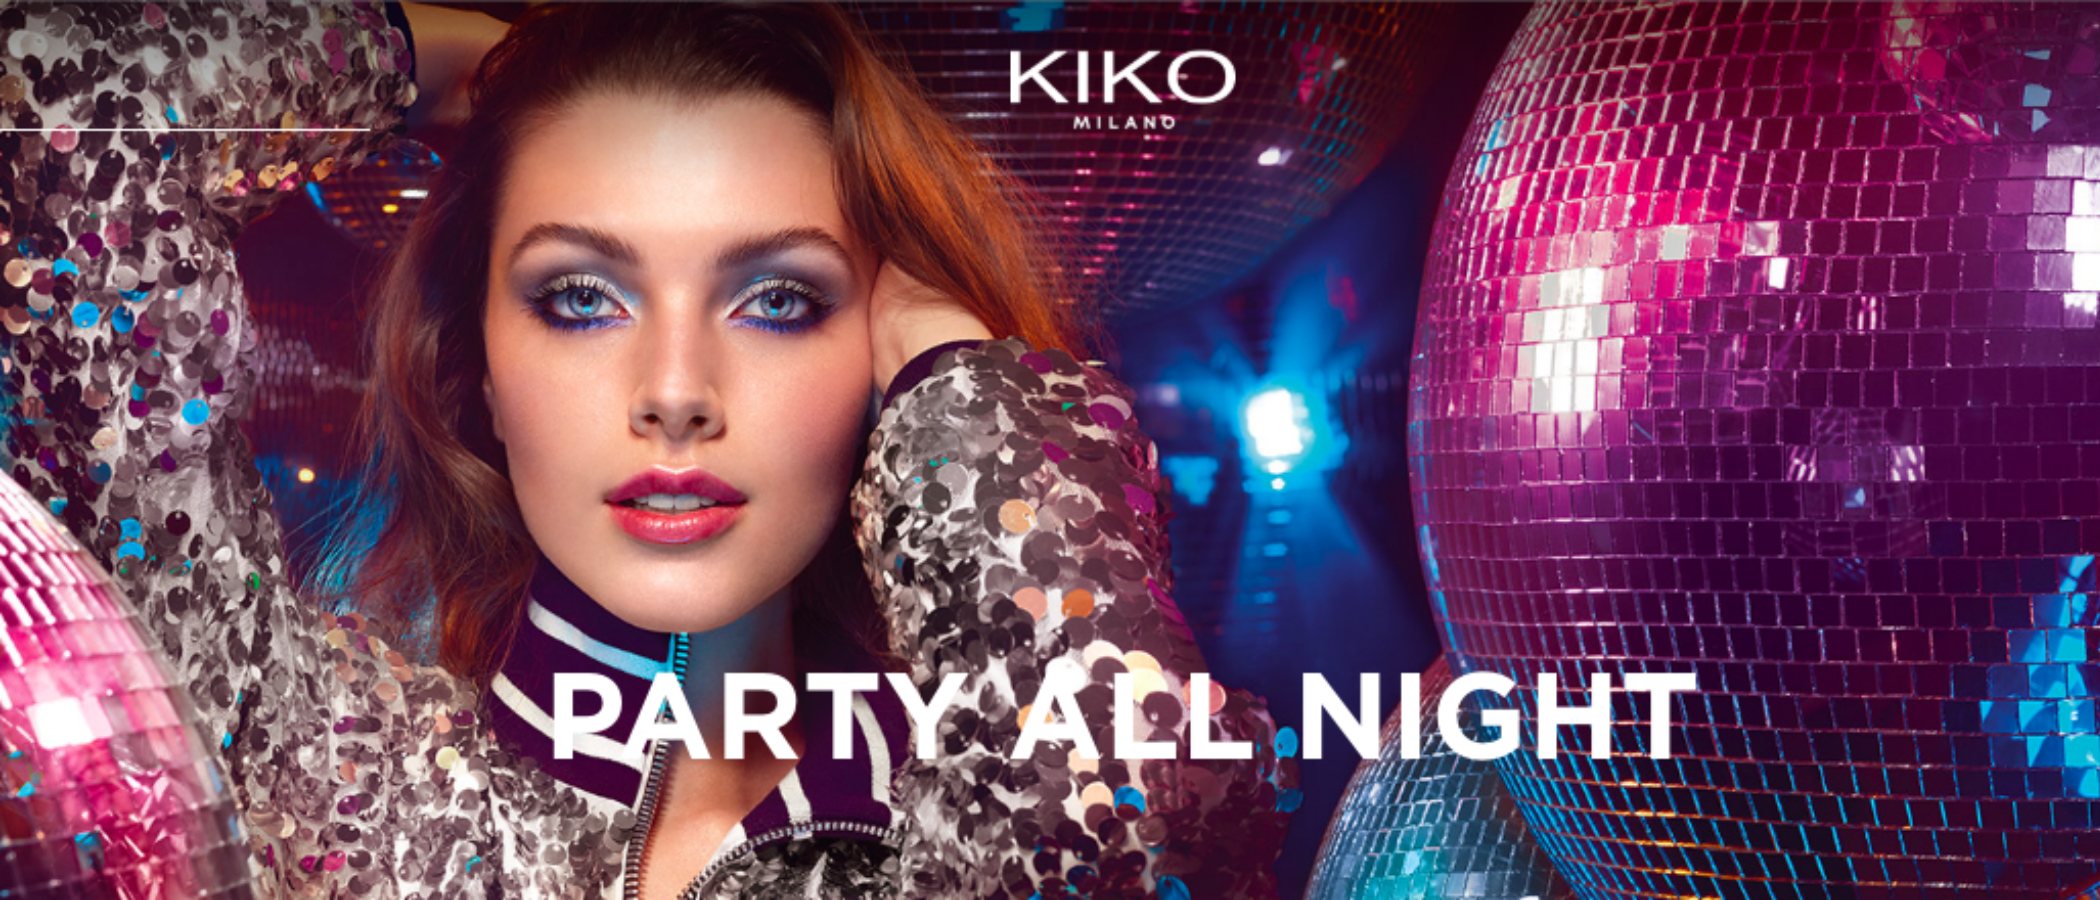 Kiko presenta la colección de maquillaje de larga duración 'Party All Night'